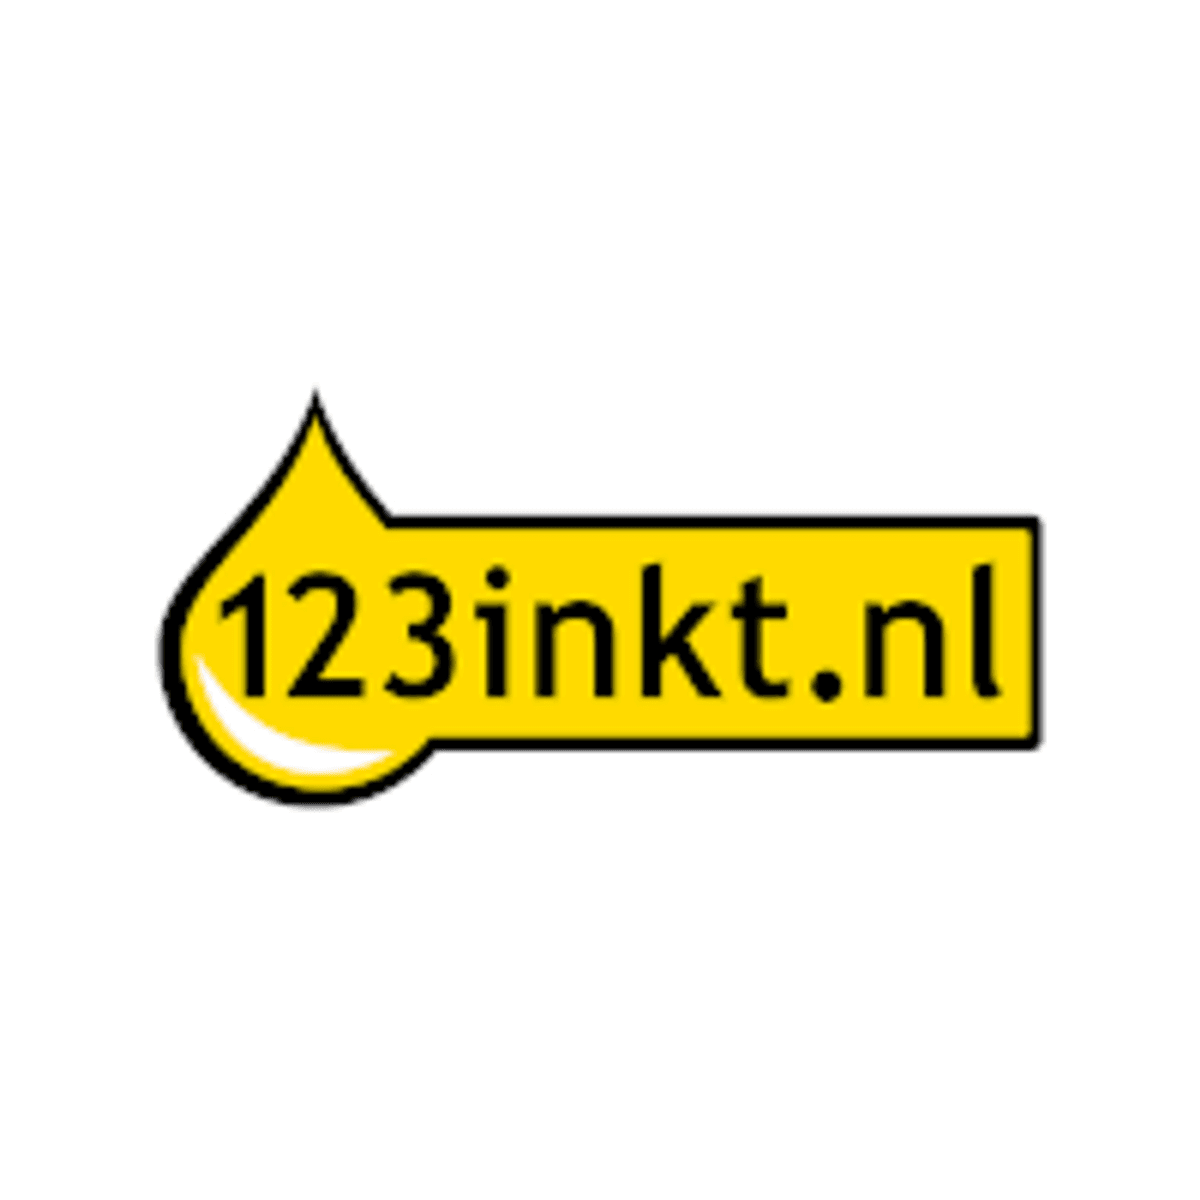 123inkt.nl te koop voor half miljard euro image